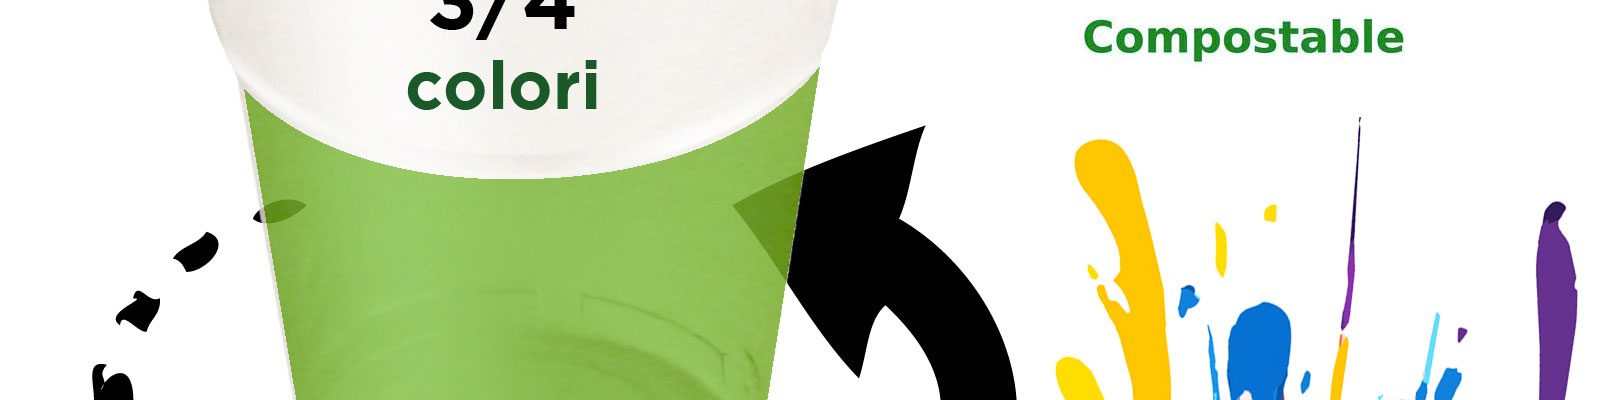 Bicchieri Biodegradabili – 250ml Stampa all over 3/4 colori